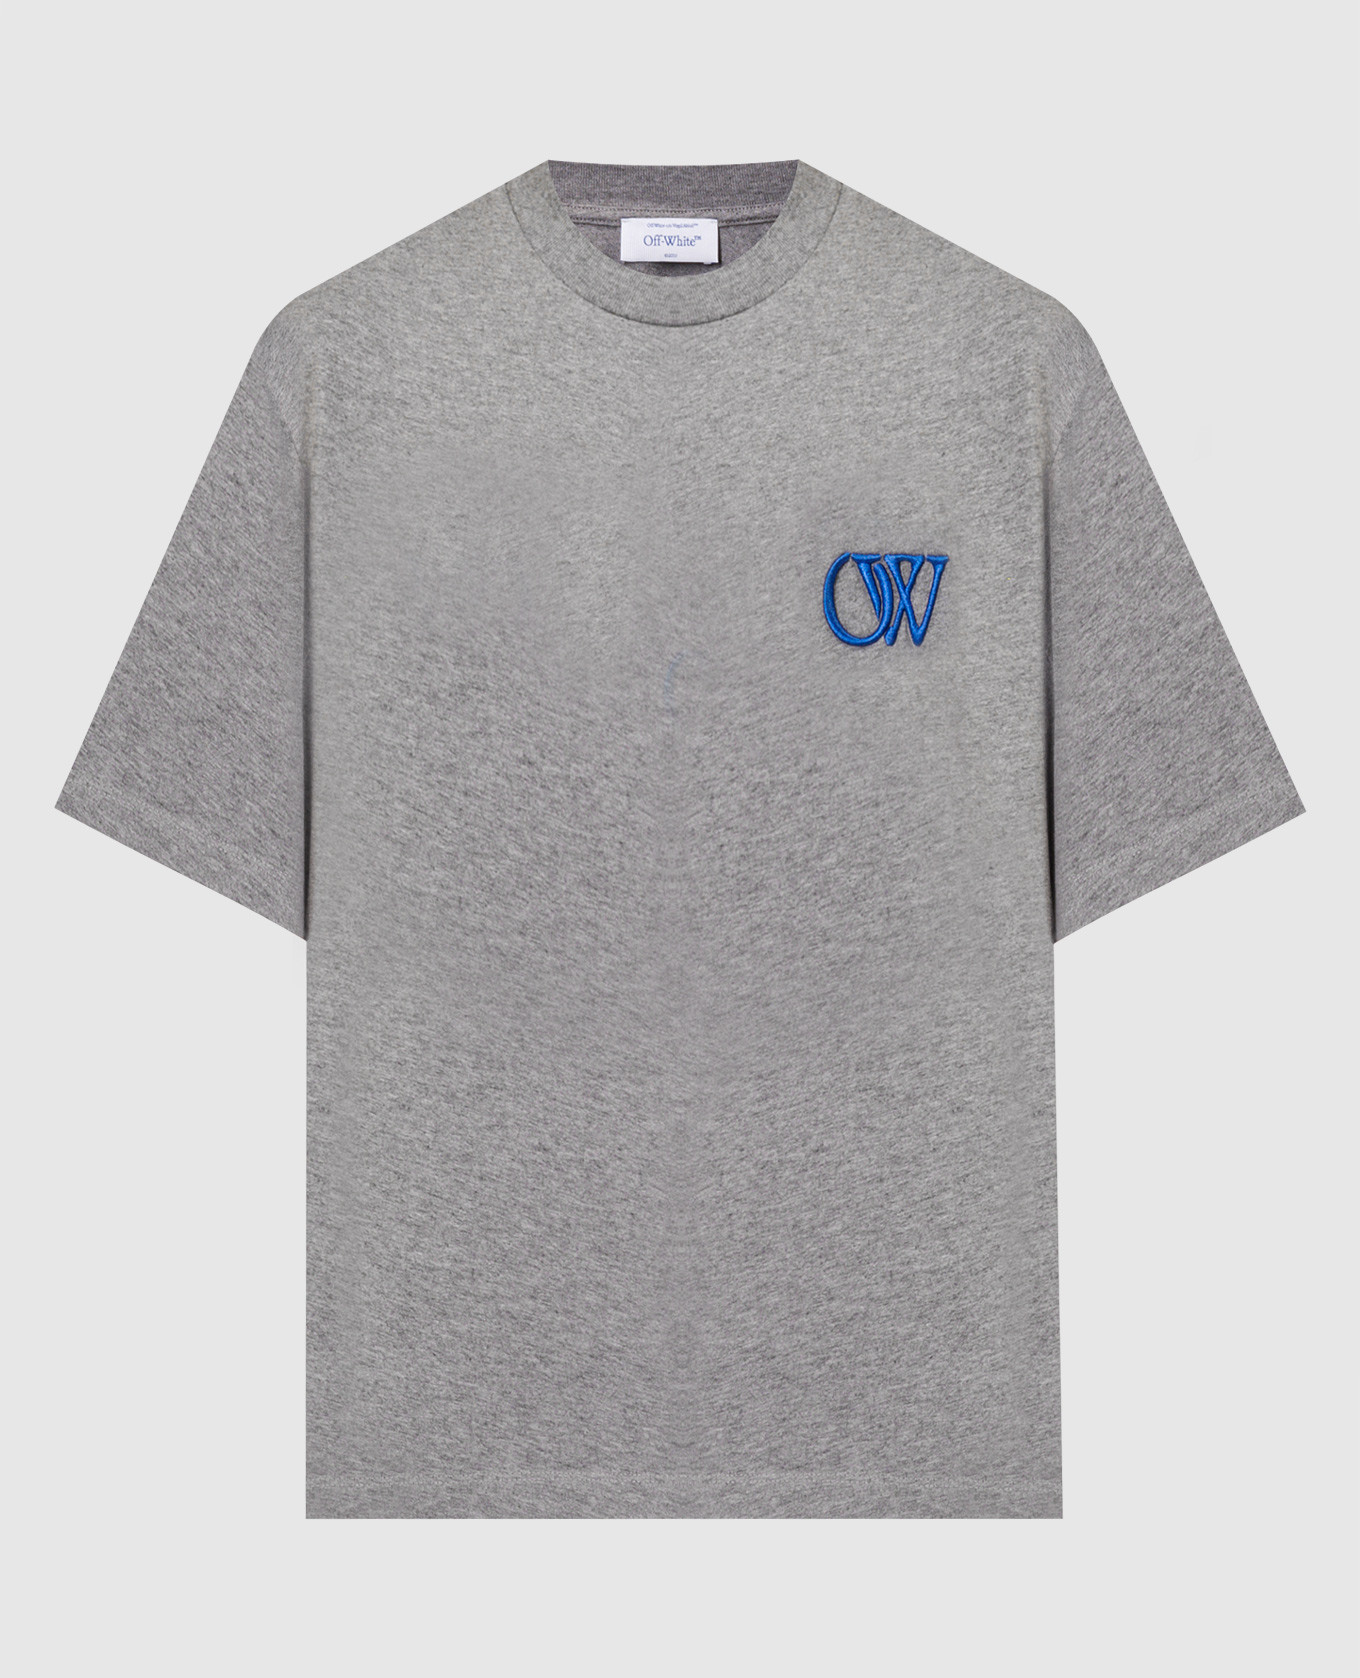 Серая меланжевая футболка с вышивкой логотипа OW